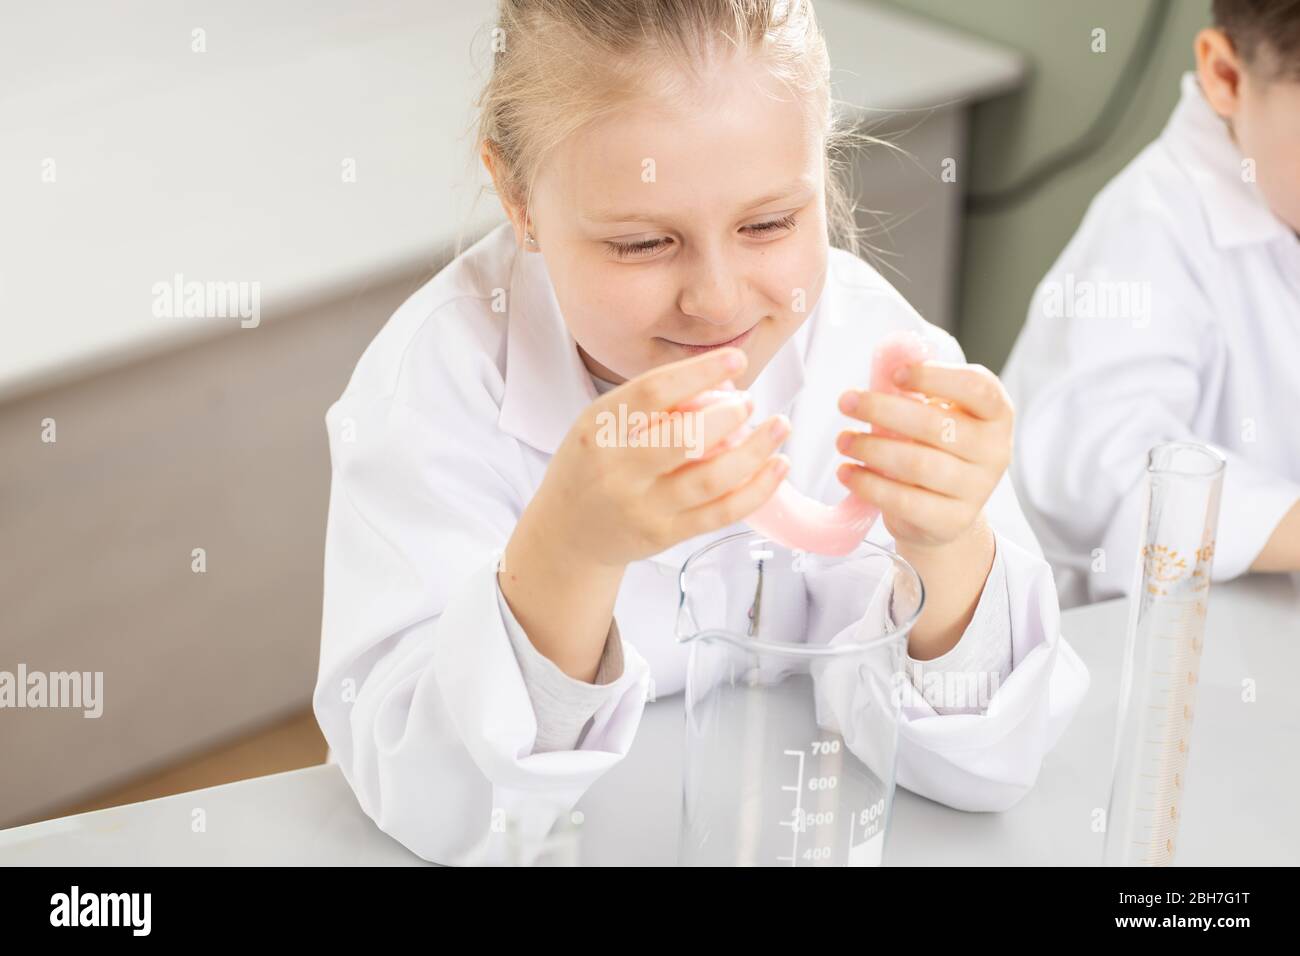 Mädchen beobachten Tuch nach chemischen Experiment Stockfoto